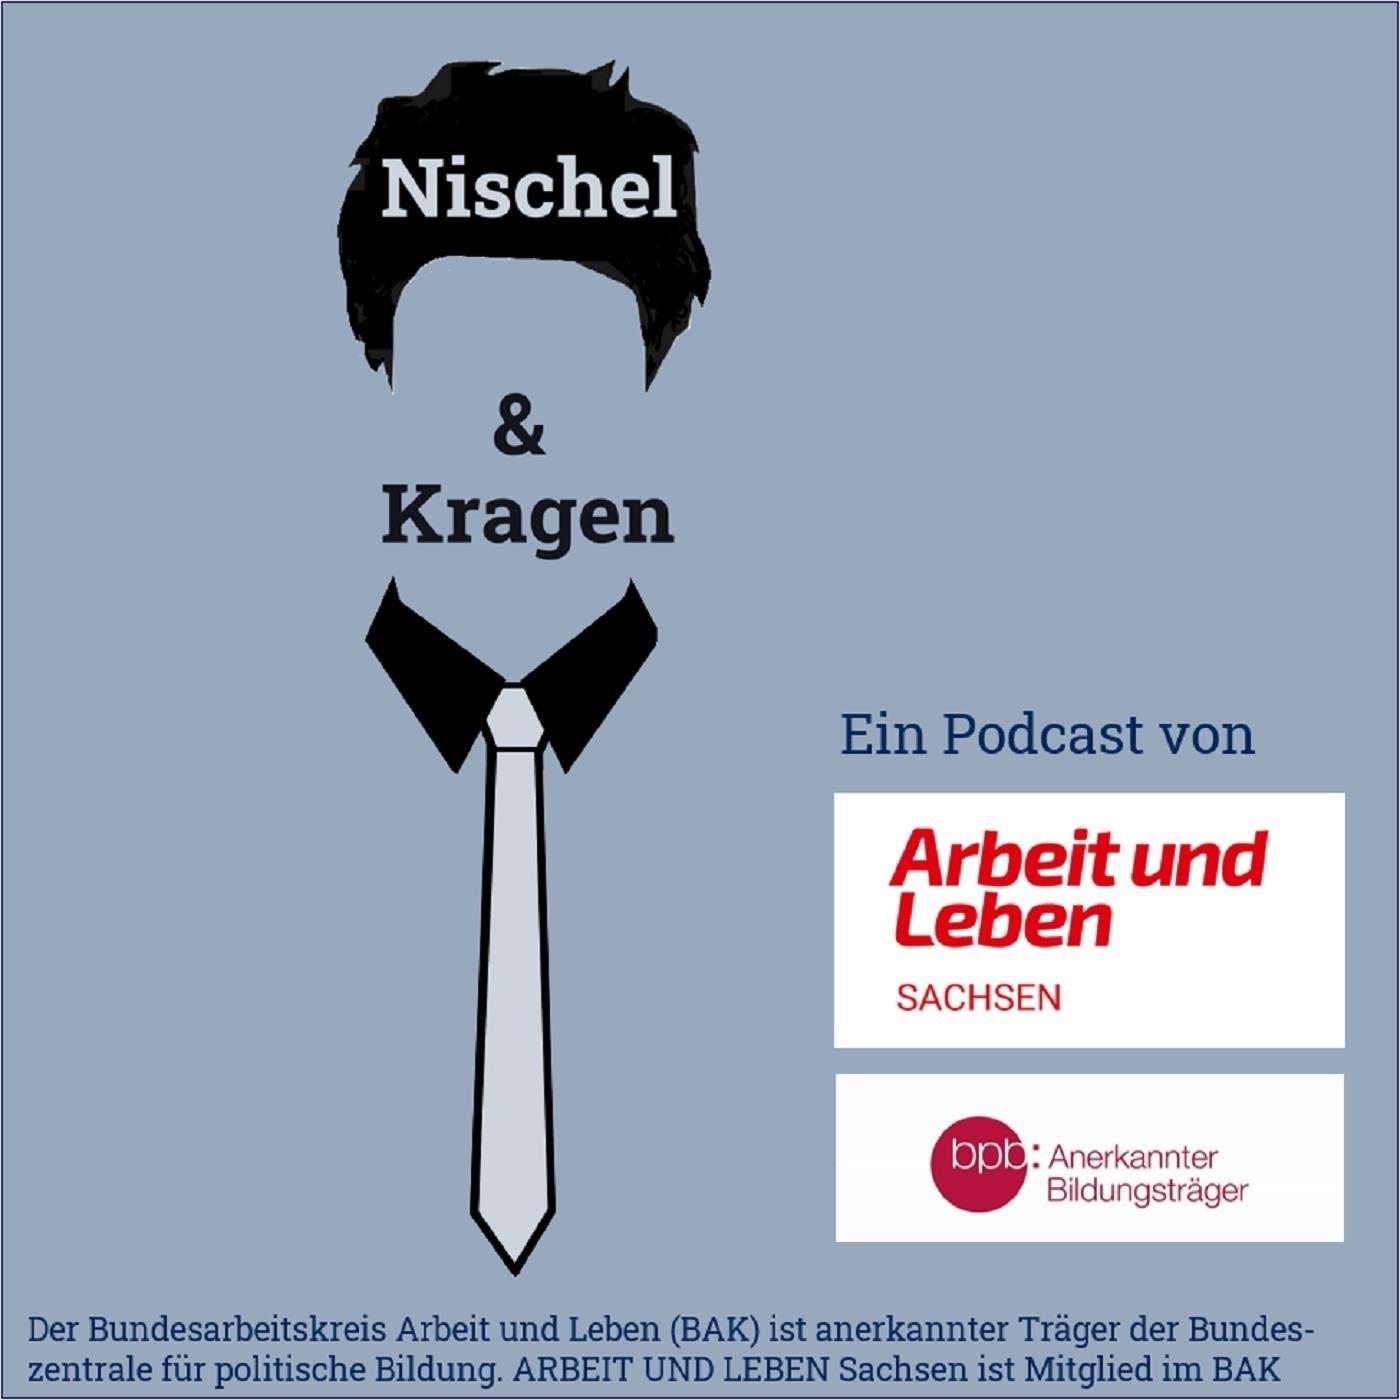 Nischel & Kragen